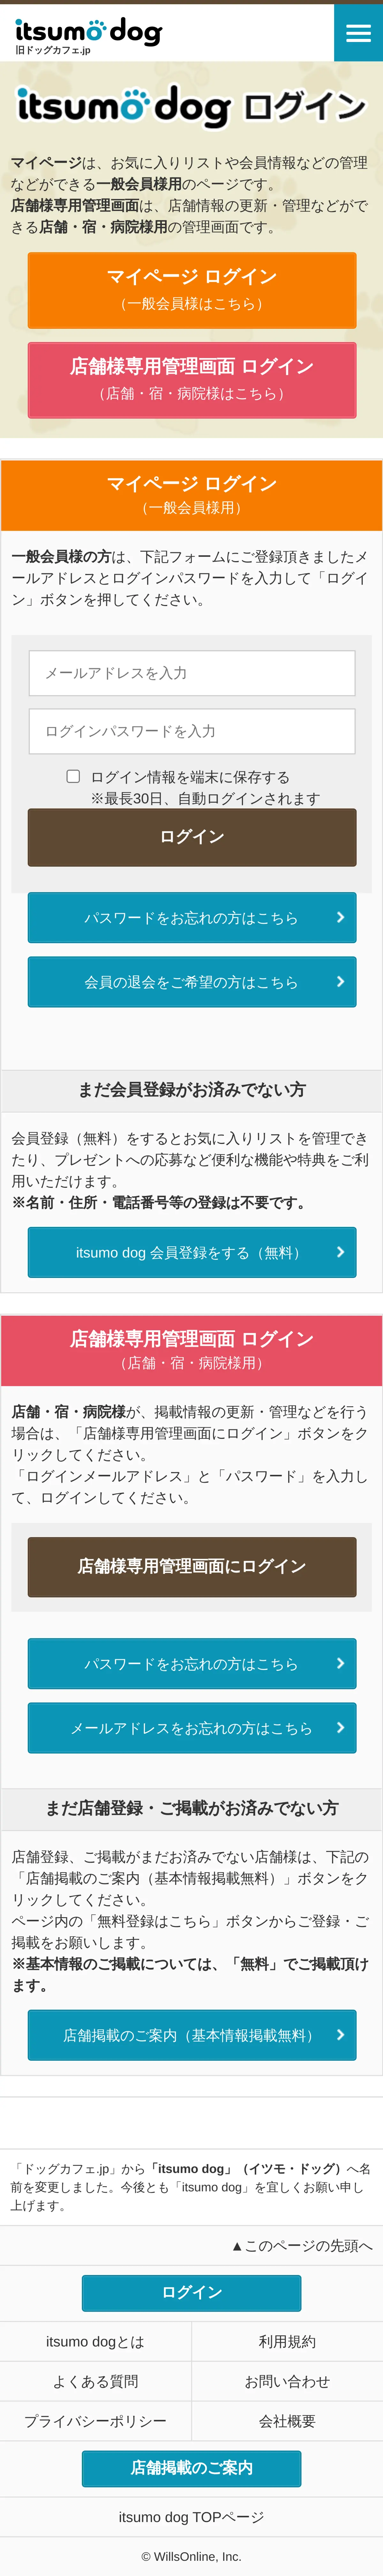 キャプチャ画面 会社名:ウィルズオンライン株式会社プロジェクト名:itsumo dog 画面名:ログイン デバイス名:SPカテゴリ:動物・ペットタグ:SP,ログイン